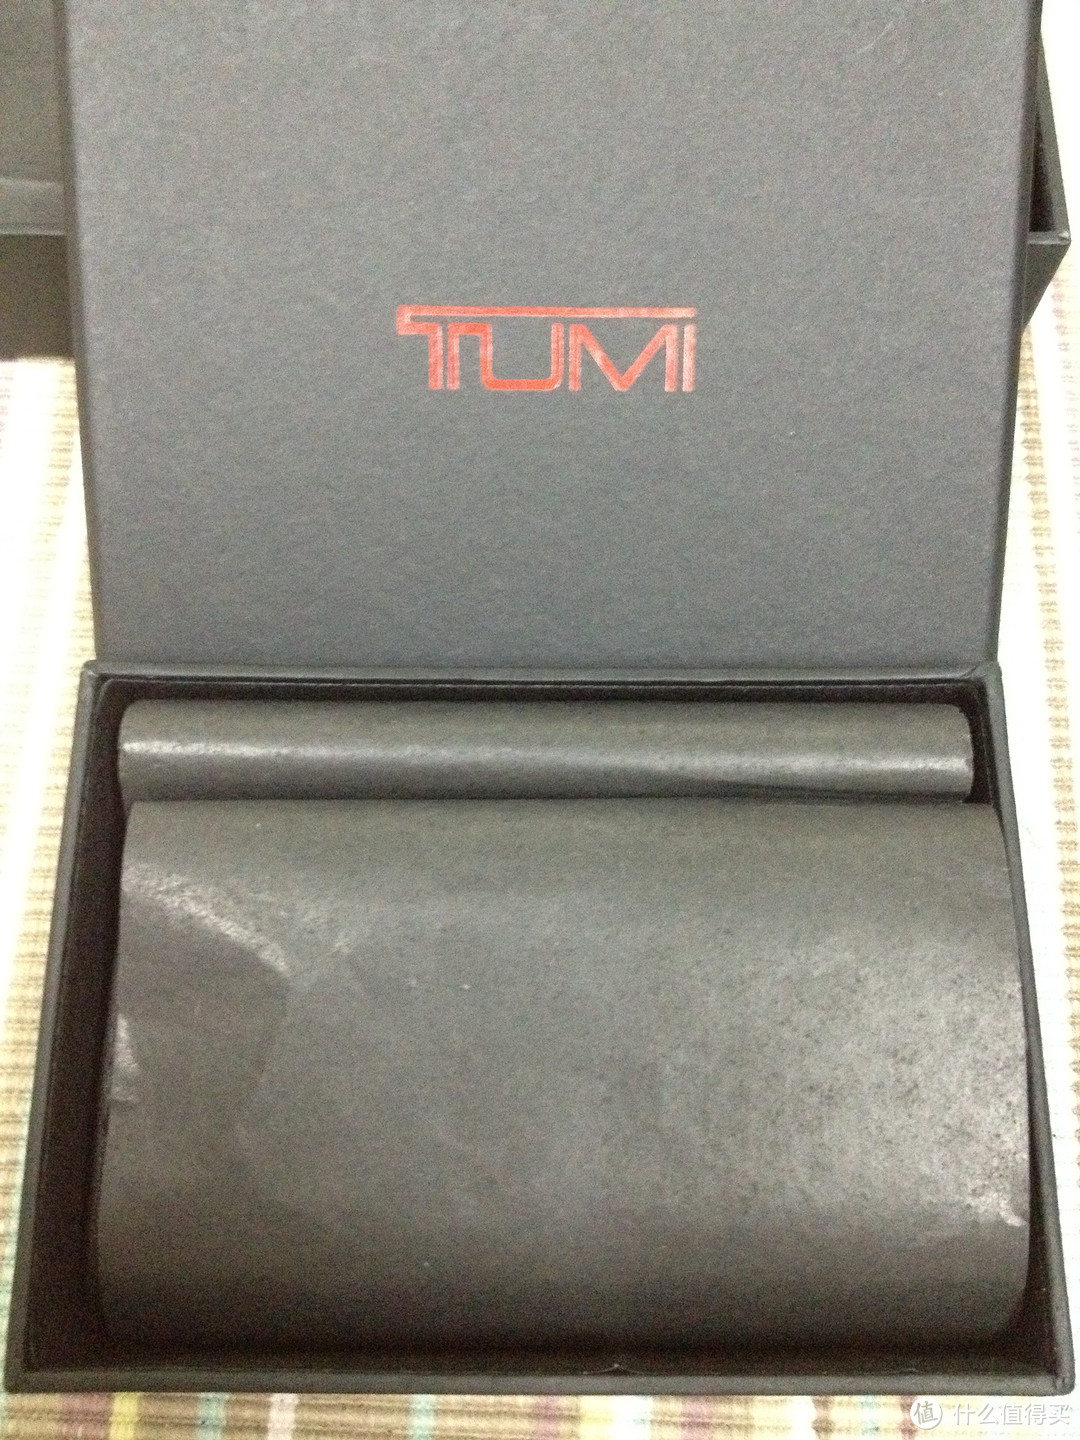 凑单+ [並行輸入品]试验品——日淘TUMI 96-1403长夹 、TUMI 19361(0096-1510)钥匙包 最后有亮点